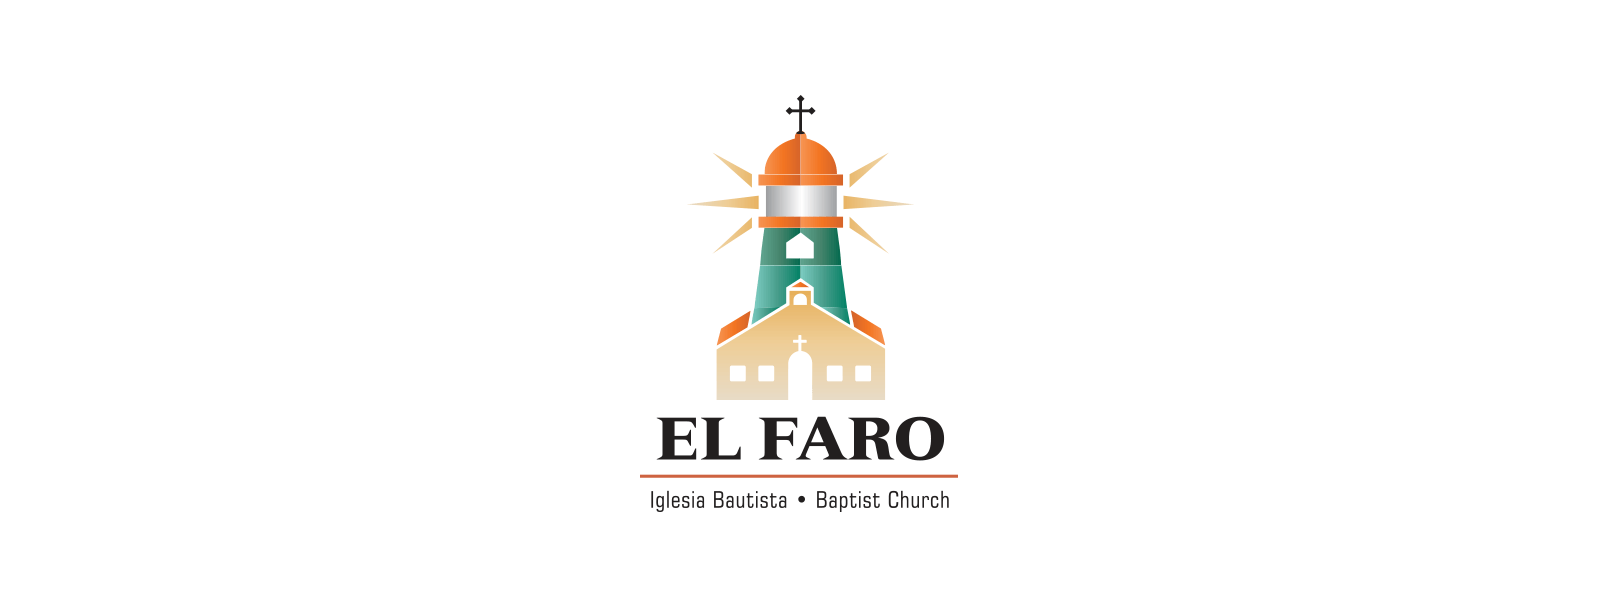 El Faro Baptist Church logo